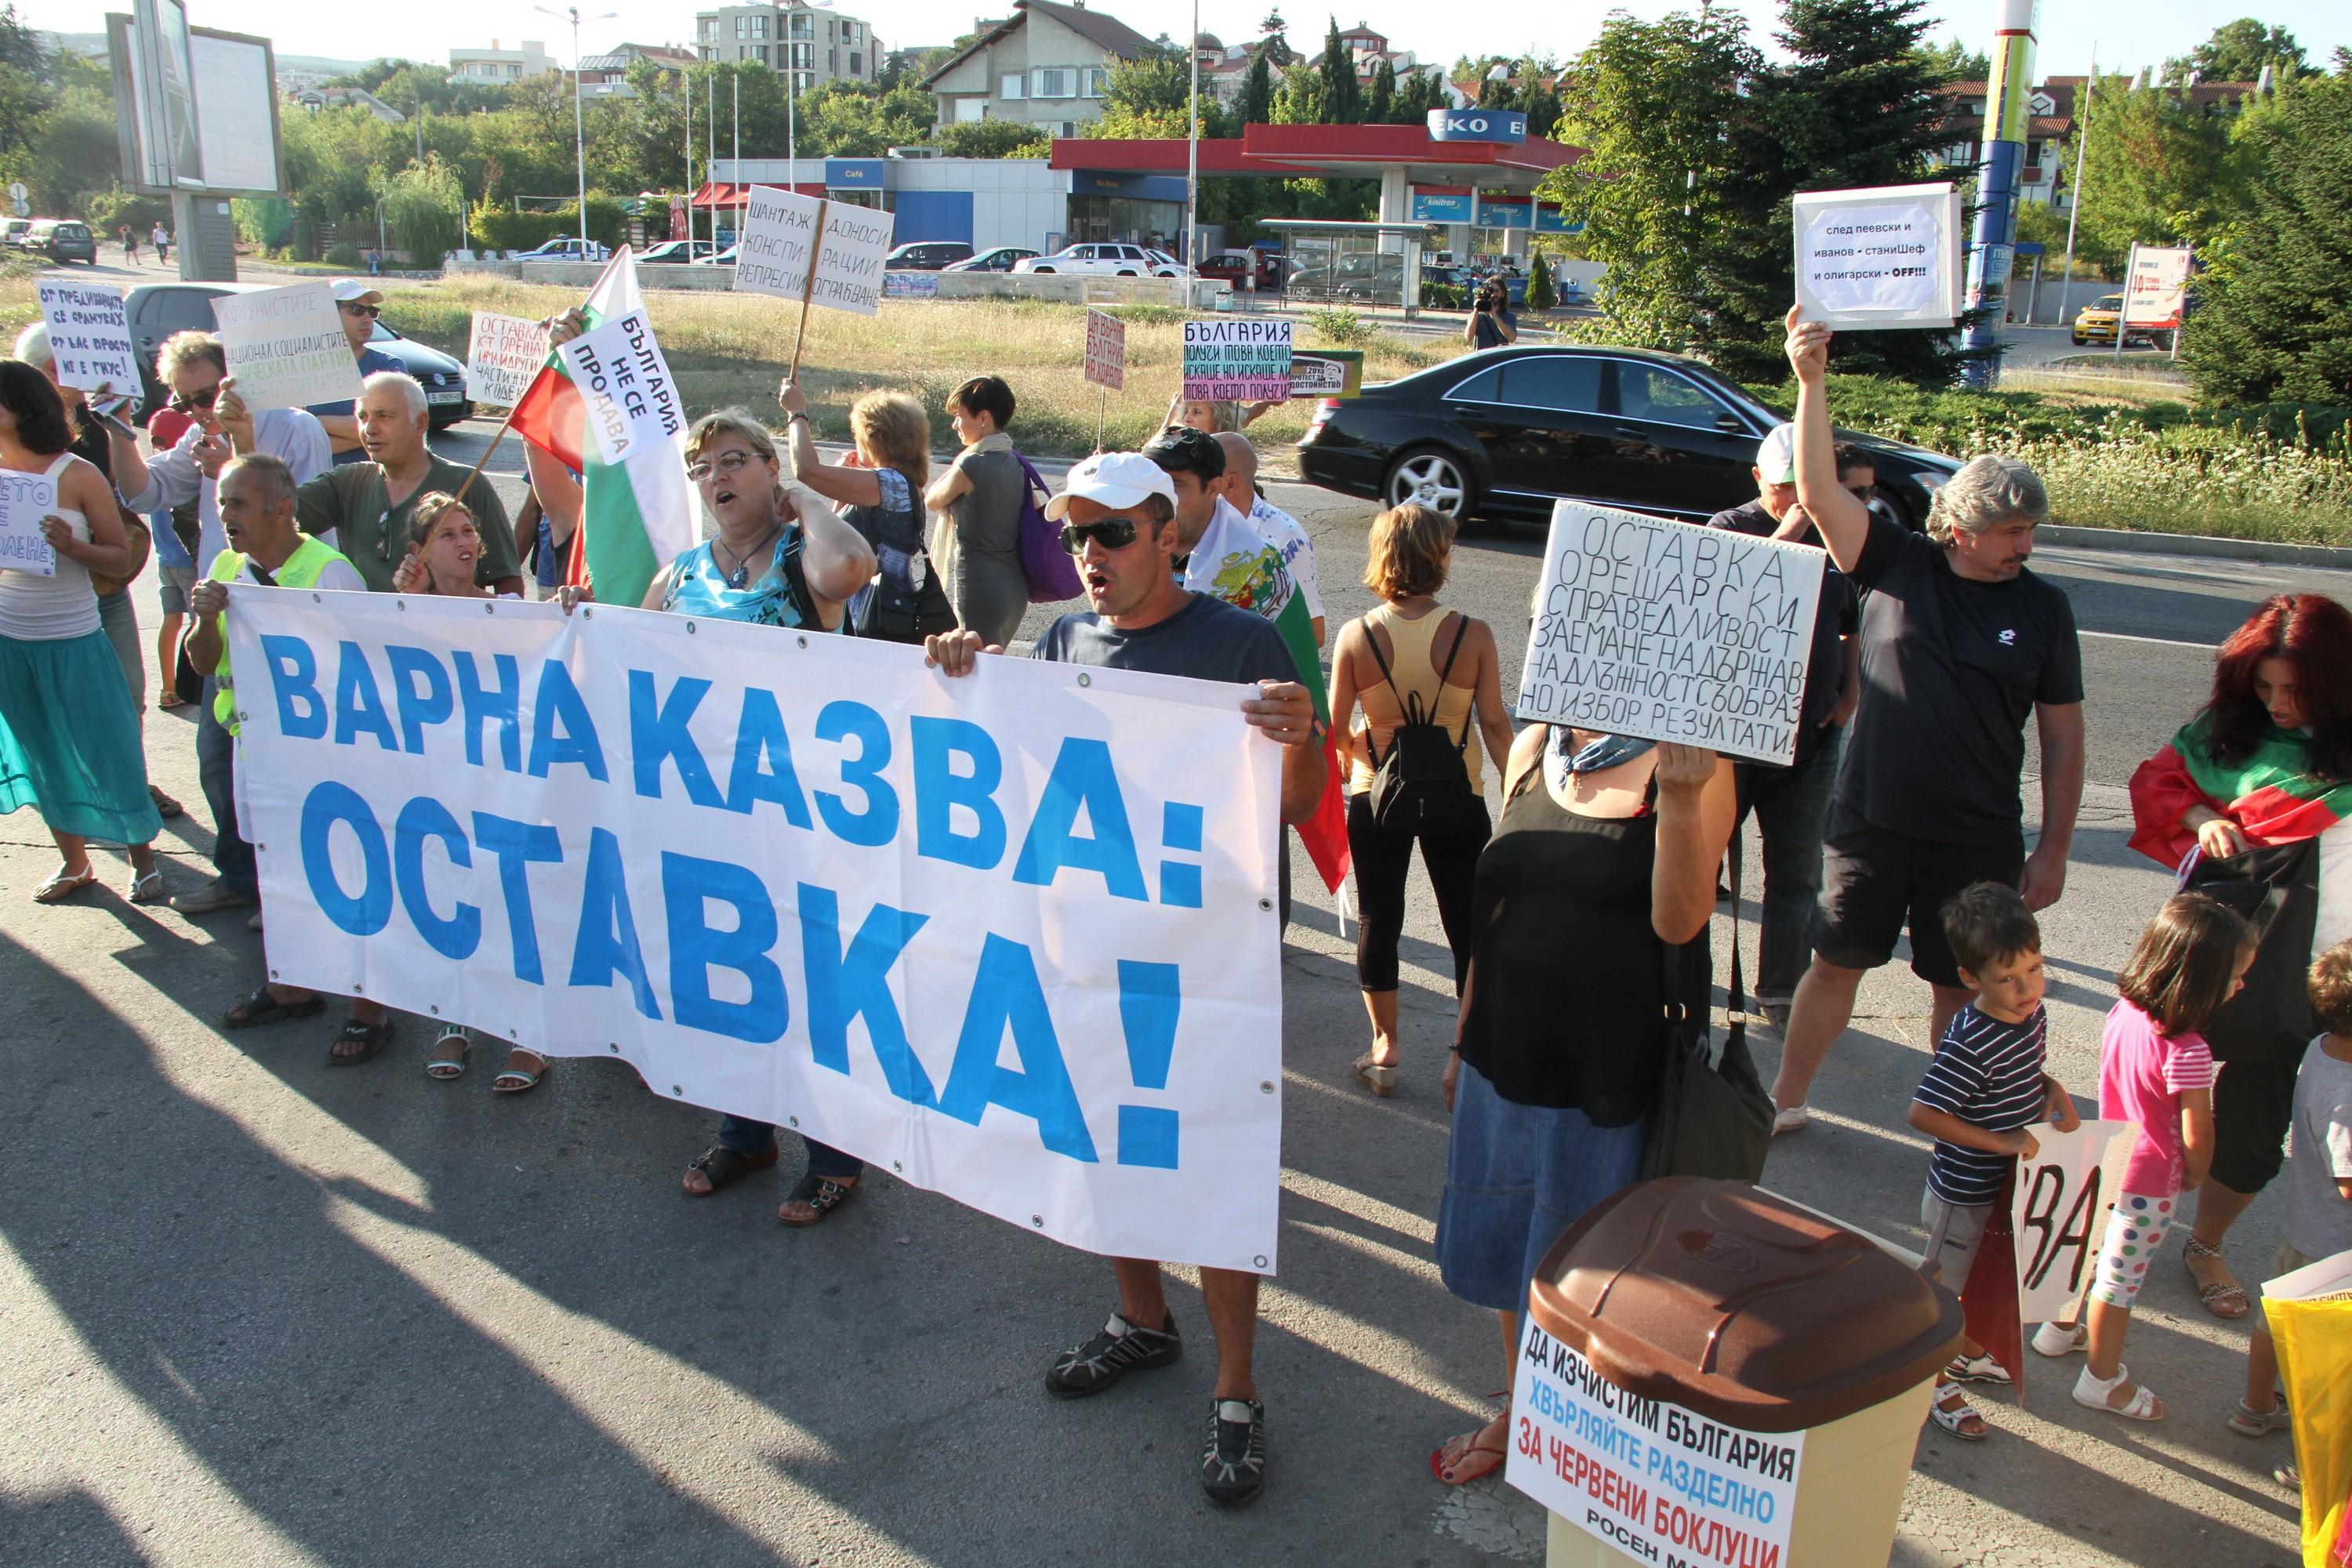 Протестиращи окупираха резиденция Евксиноград край Варна, където почиват депутати